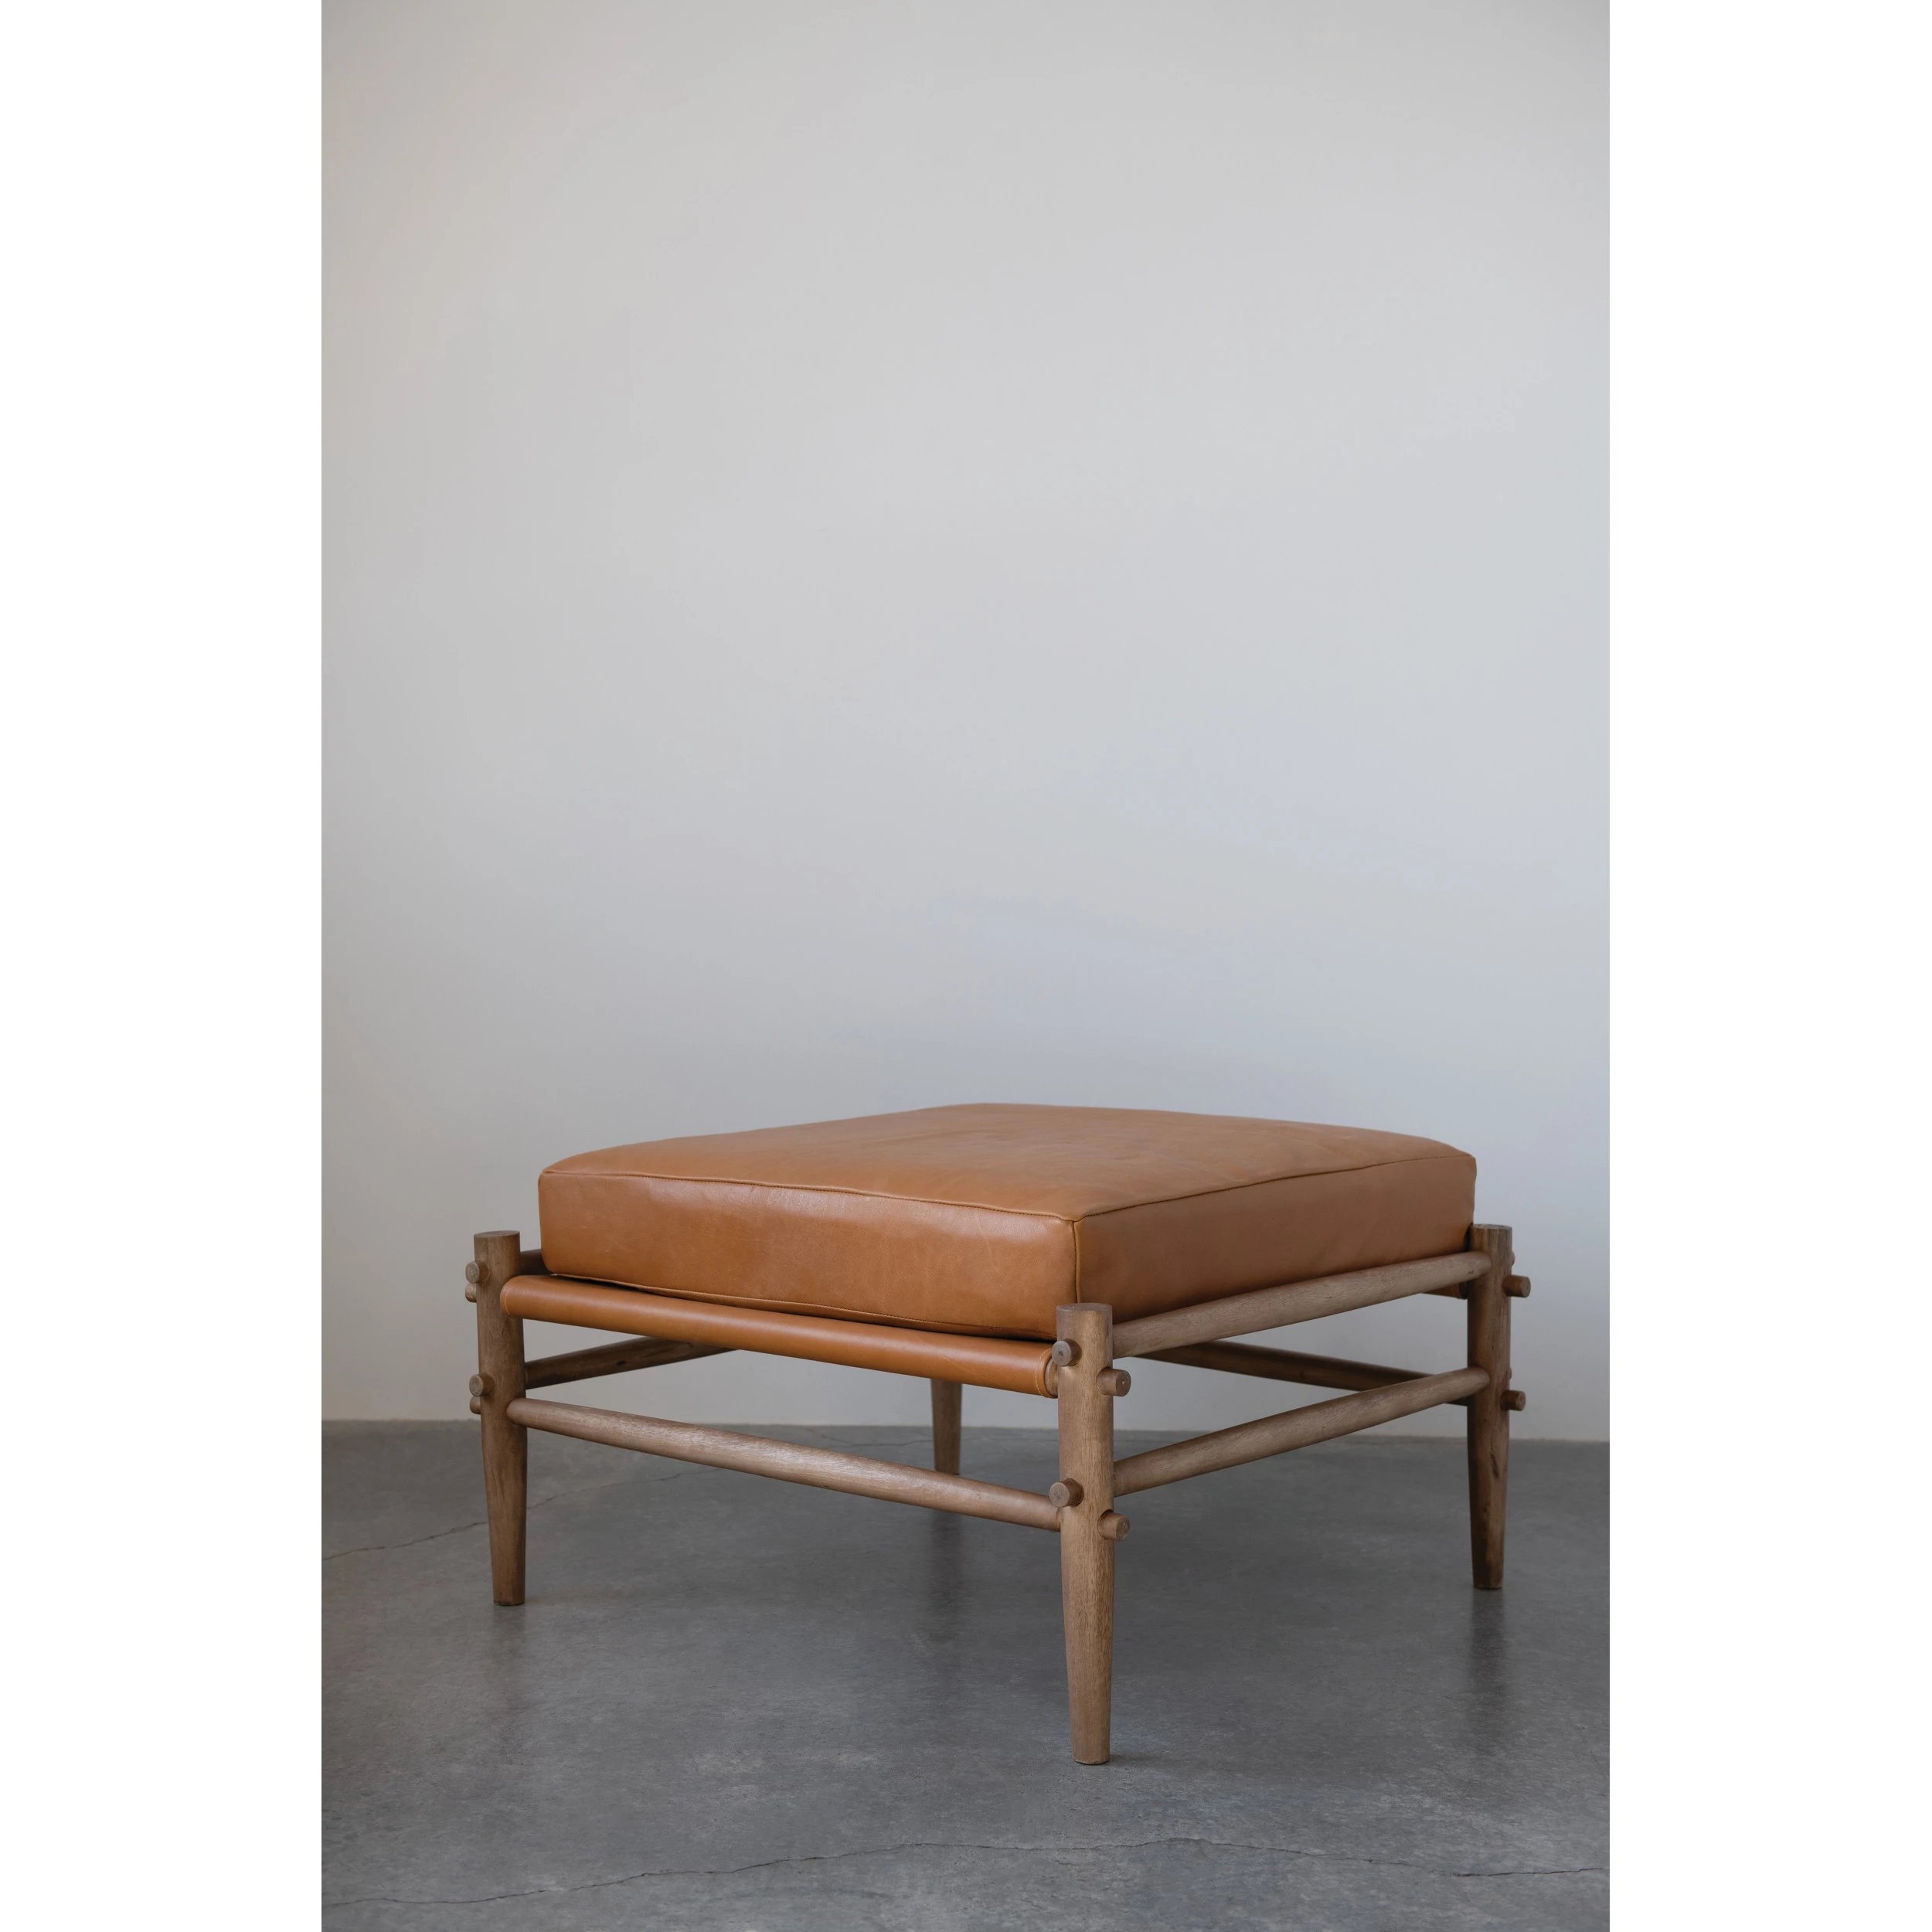 Mango Wood Ottoman with Leather Cushion - Image 1